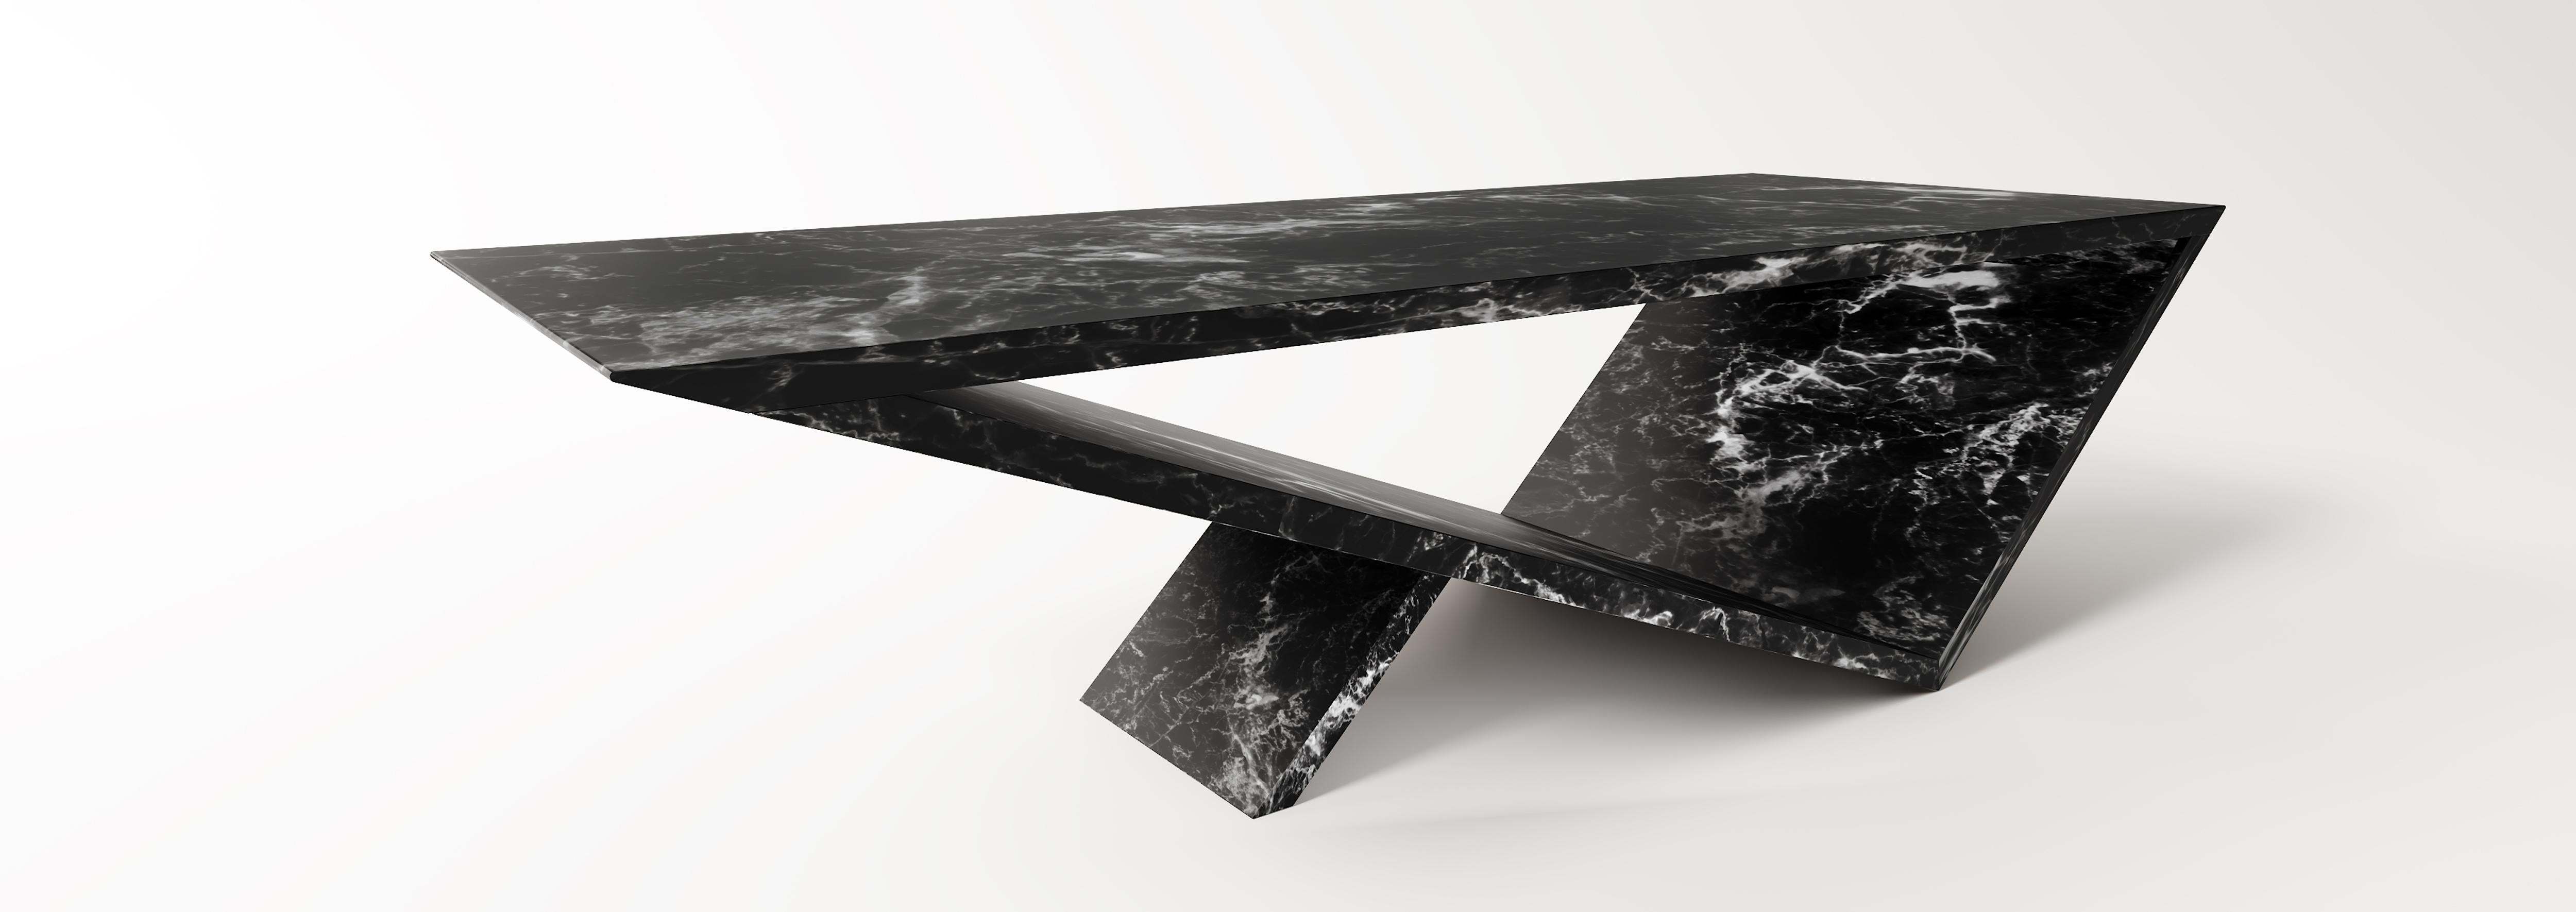 Table basse du portail Time/Space en pierre ollaire noire de Neal Aronowitz Design
Dimensions : D 167,7 x L 63,5 x H 45,7 cm
Matériaux : Pierre à savon noire.
Cette table peut également être réalisée dans d'autres finitions et types de